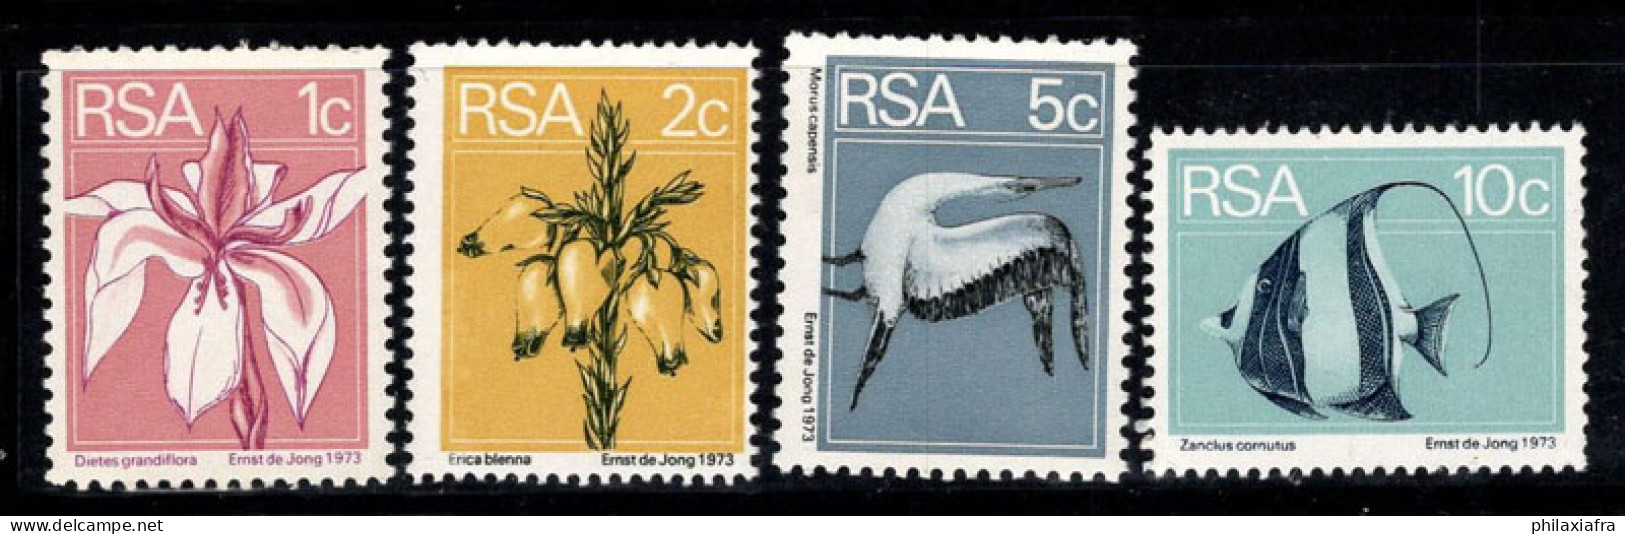 Afrique Du Sud 1974 Mi. 463A-466A Neuf ** 100% Flore Et Faune, Poissons, Fleurs - Nuevos